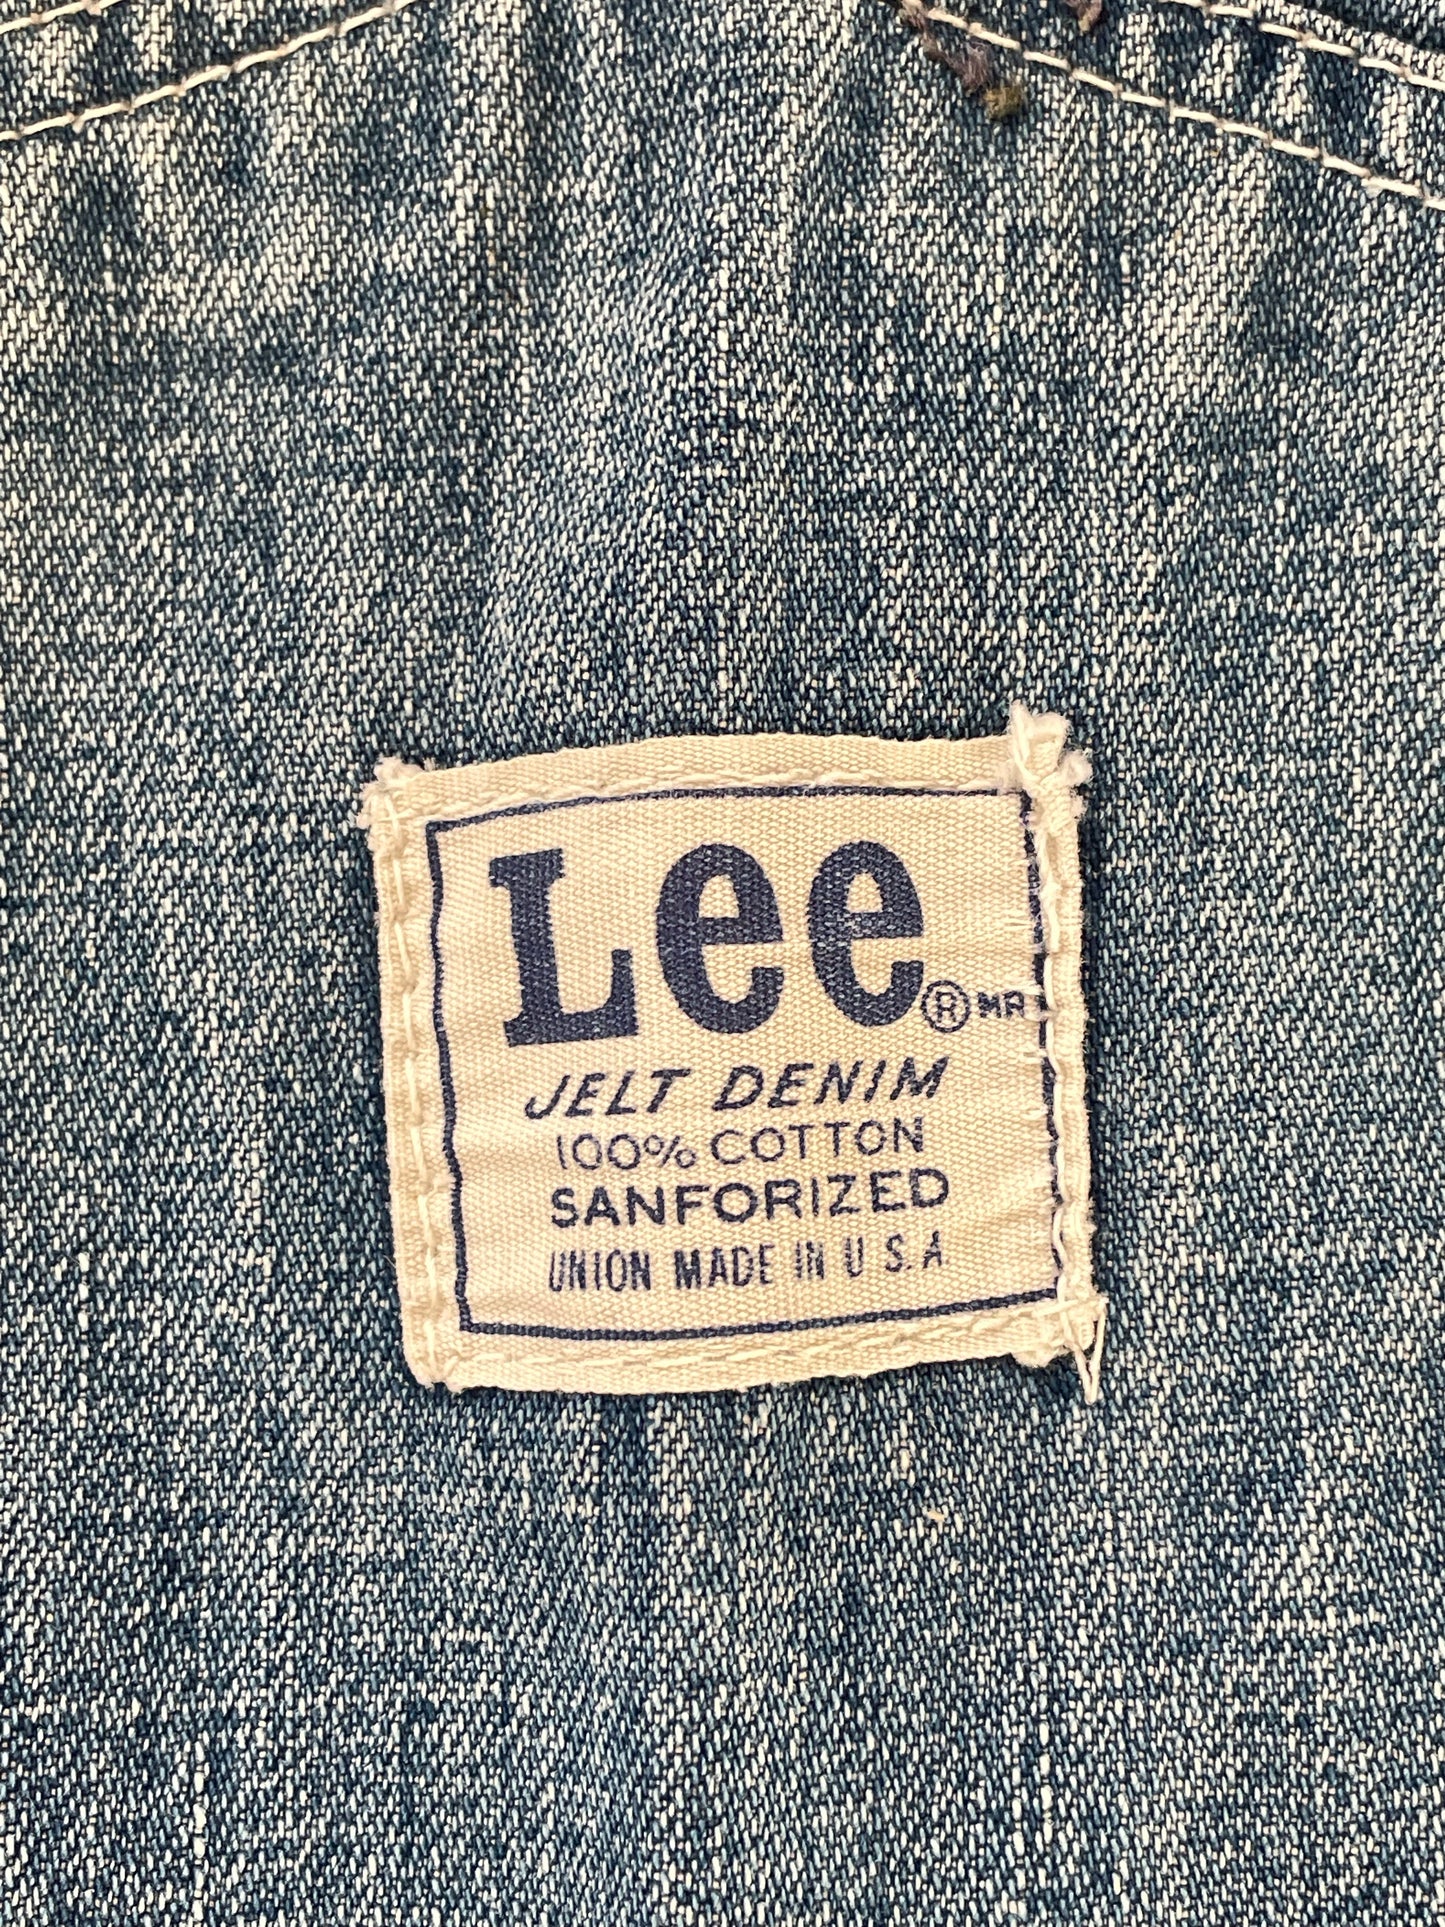 60s Lee Jelt Denim Overalls